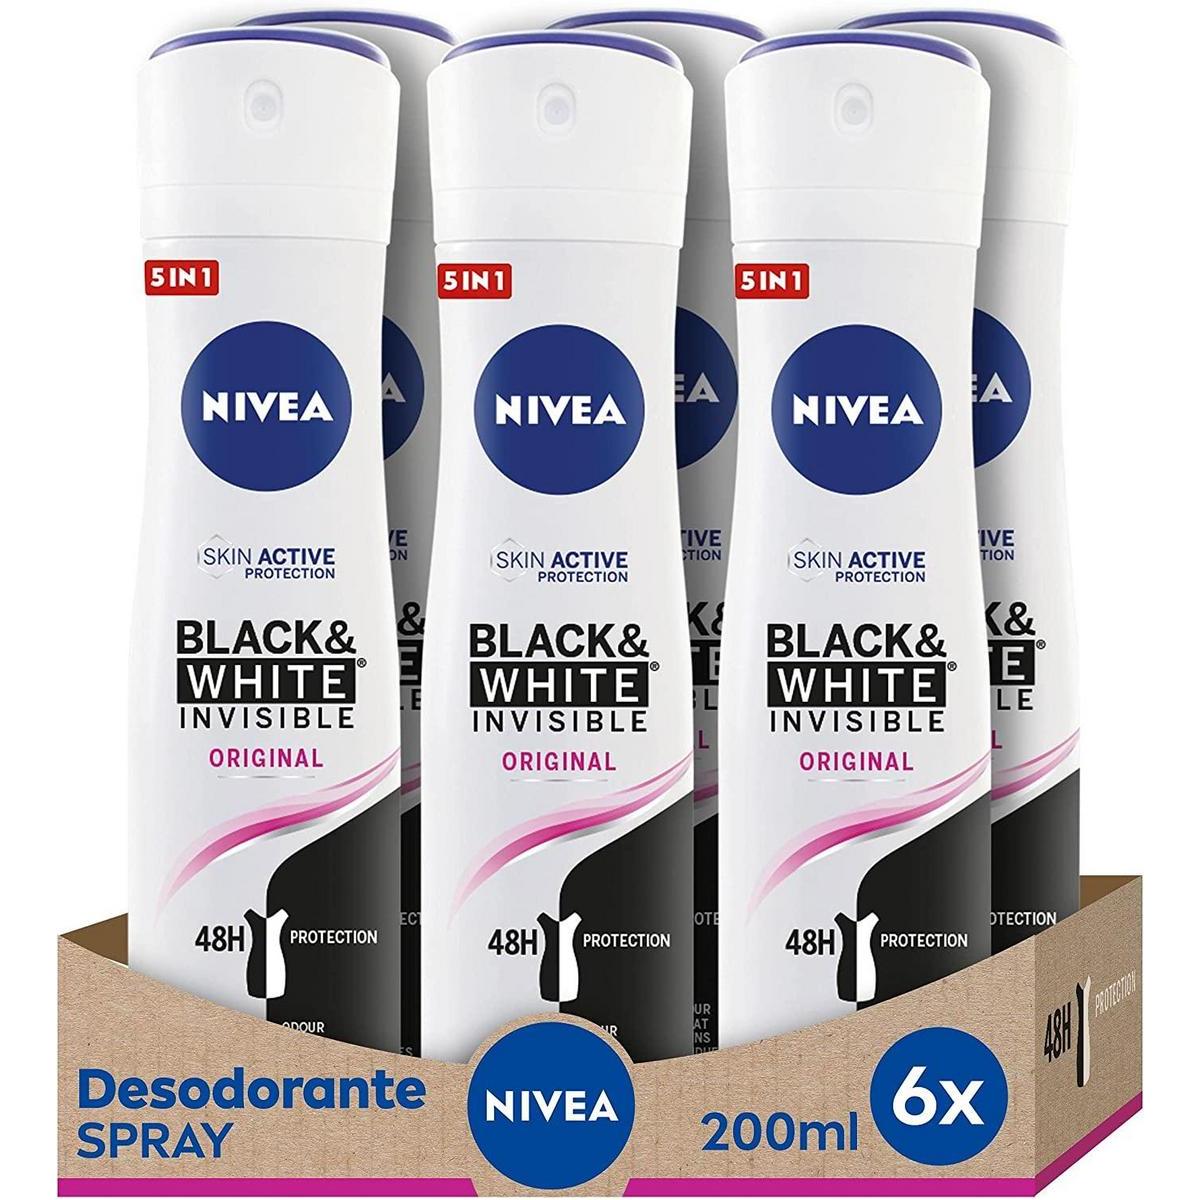 Pack de 6 desodorantes Nivea Black & White Invisible Original por sólo 12€ ¡¡32% de descuento!!